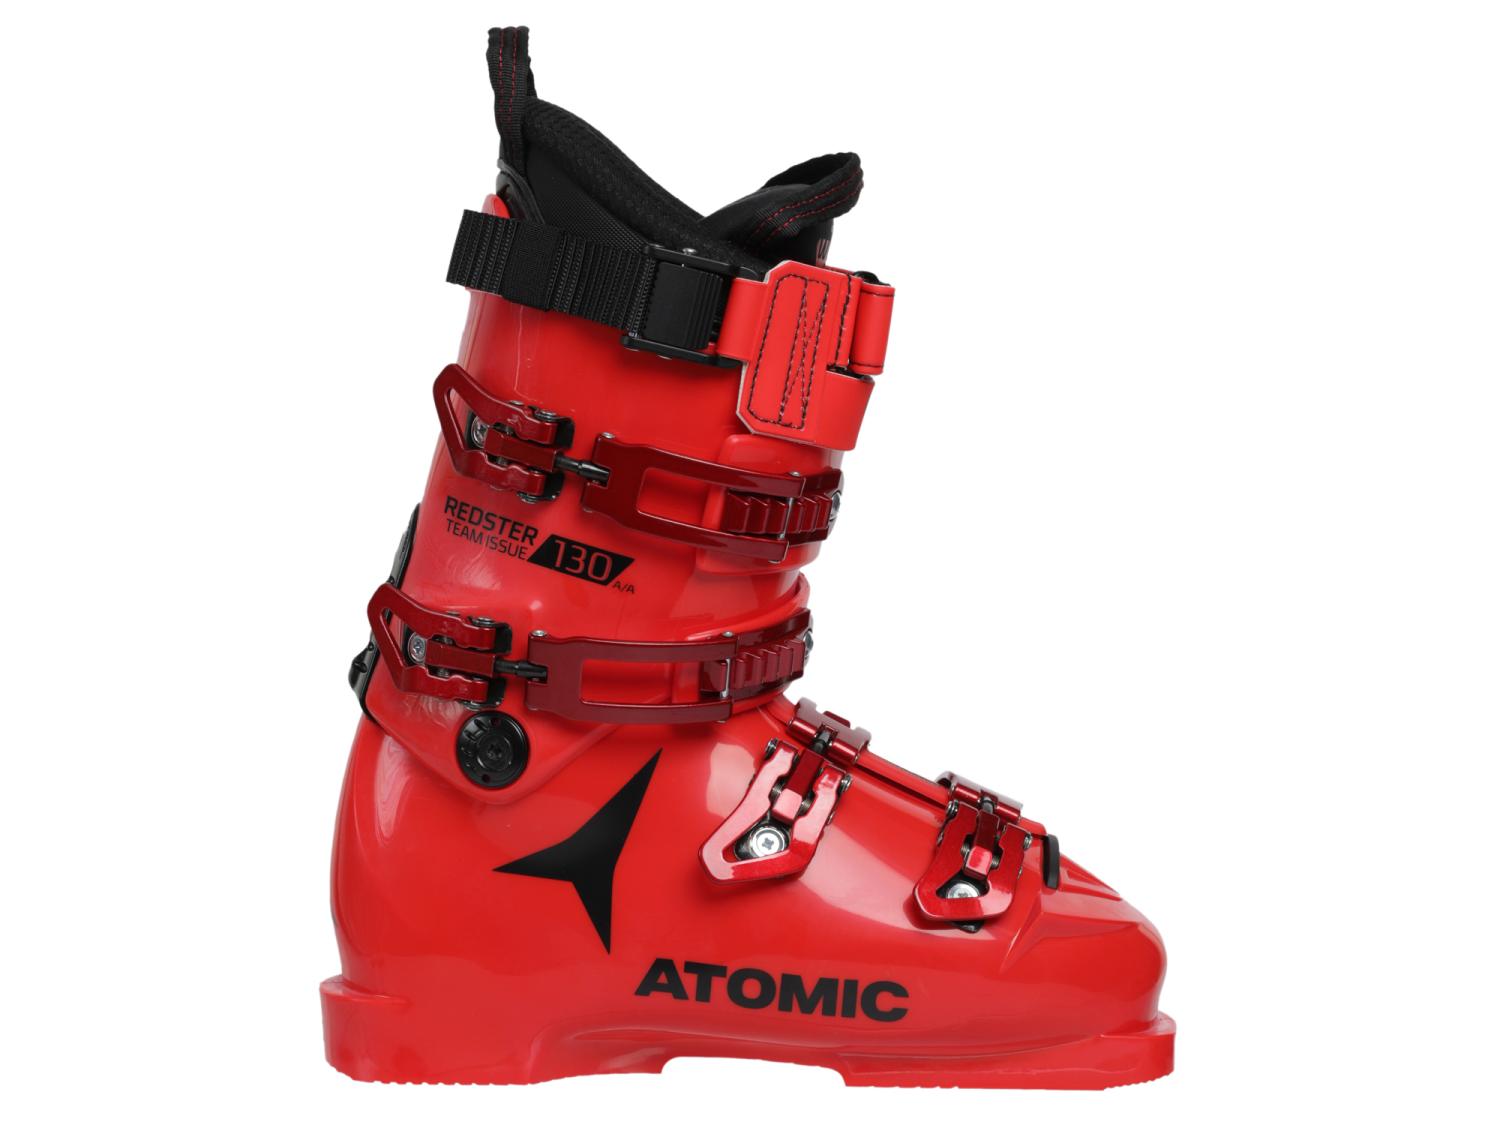 Ботинки горнолыжные Atomic 20-21 Redster Team Issue 130 Red/Black скорлупа